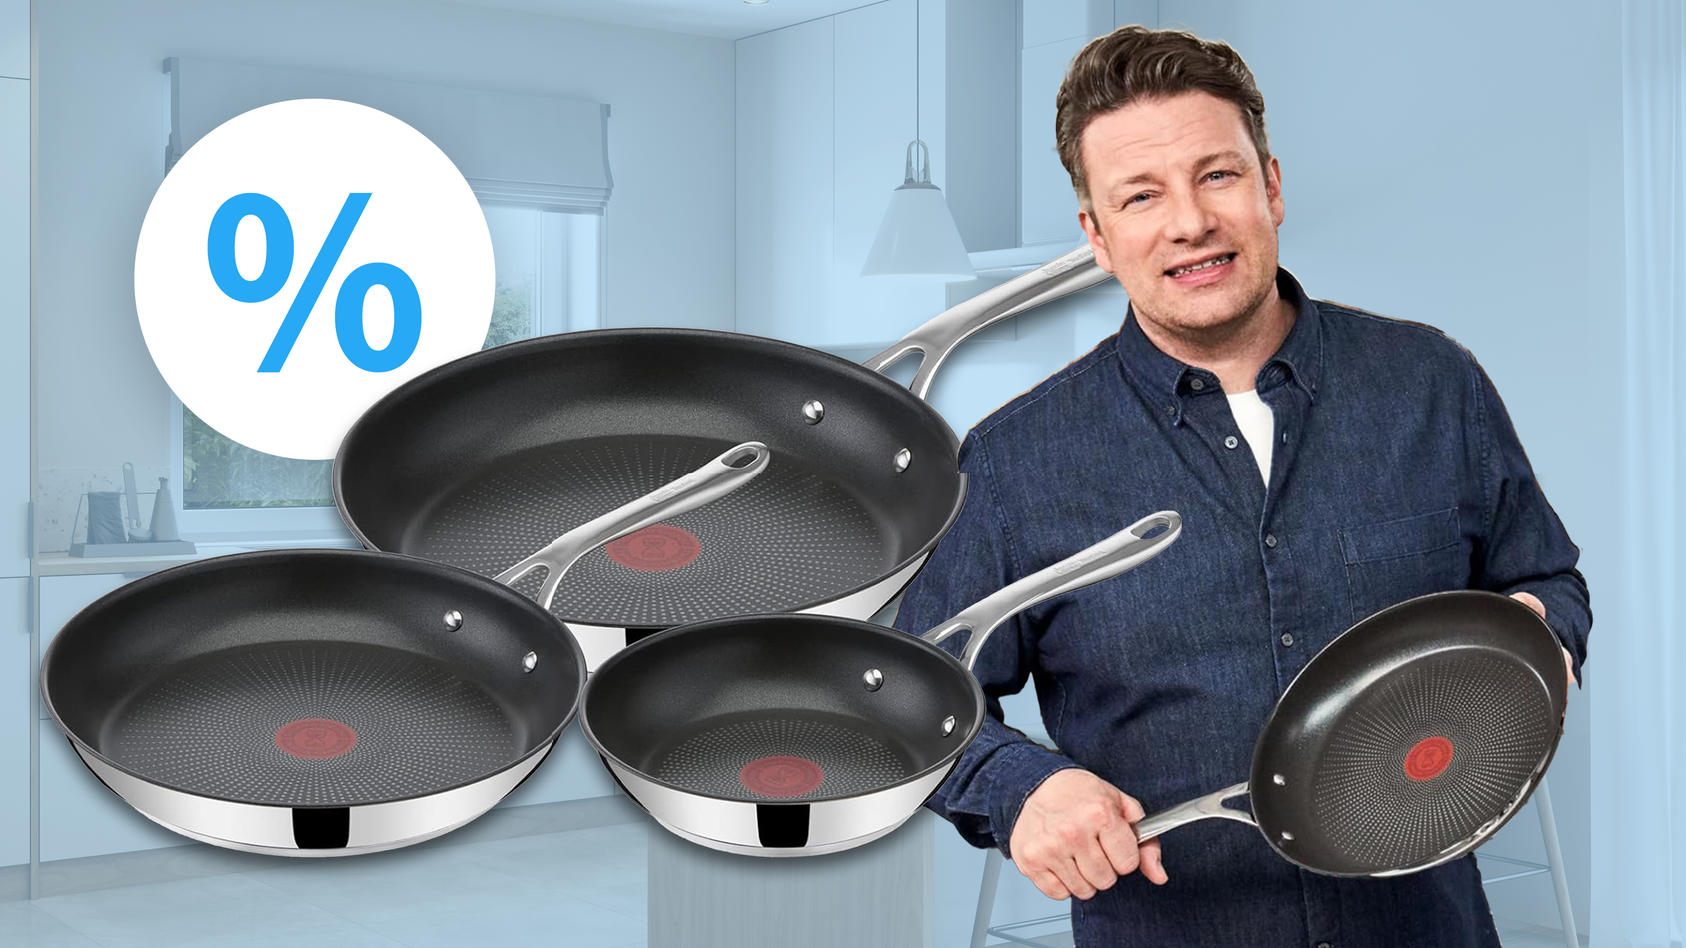 Ein pfanntastischer Deal: Jamie-Oliver-Pfannen-Set